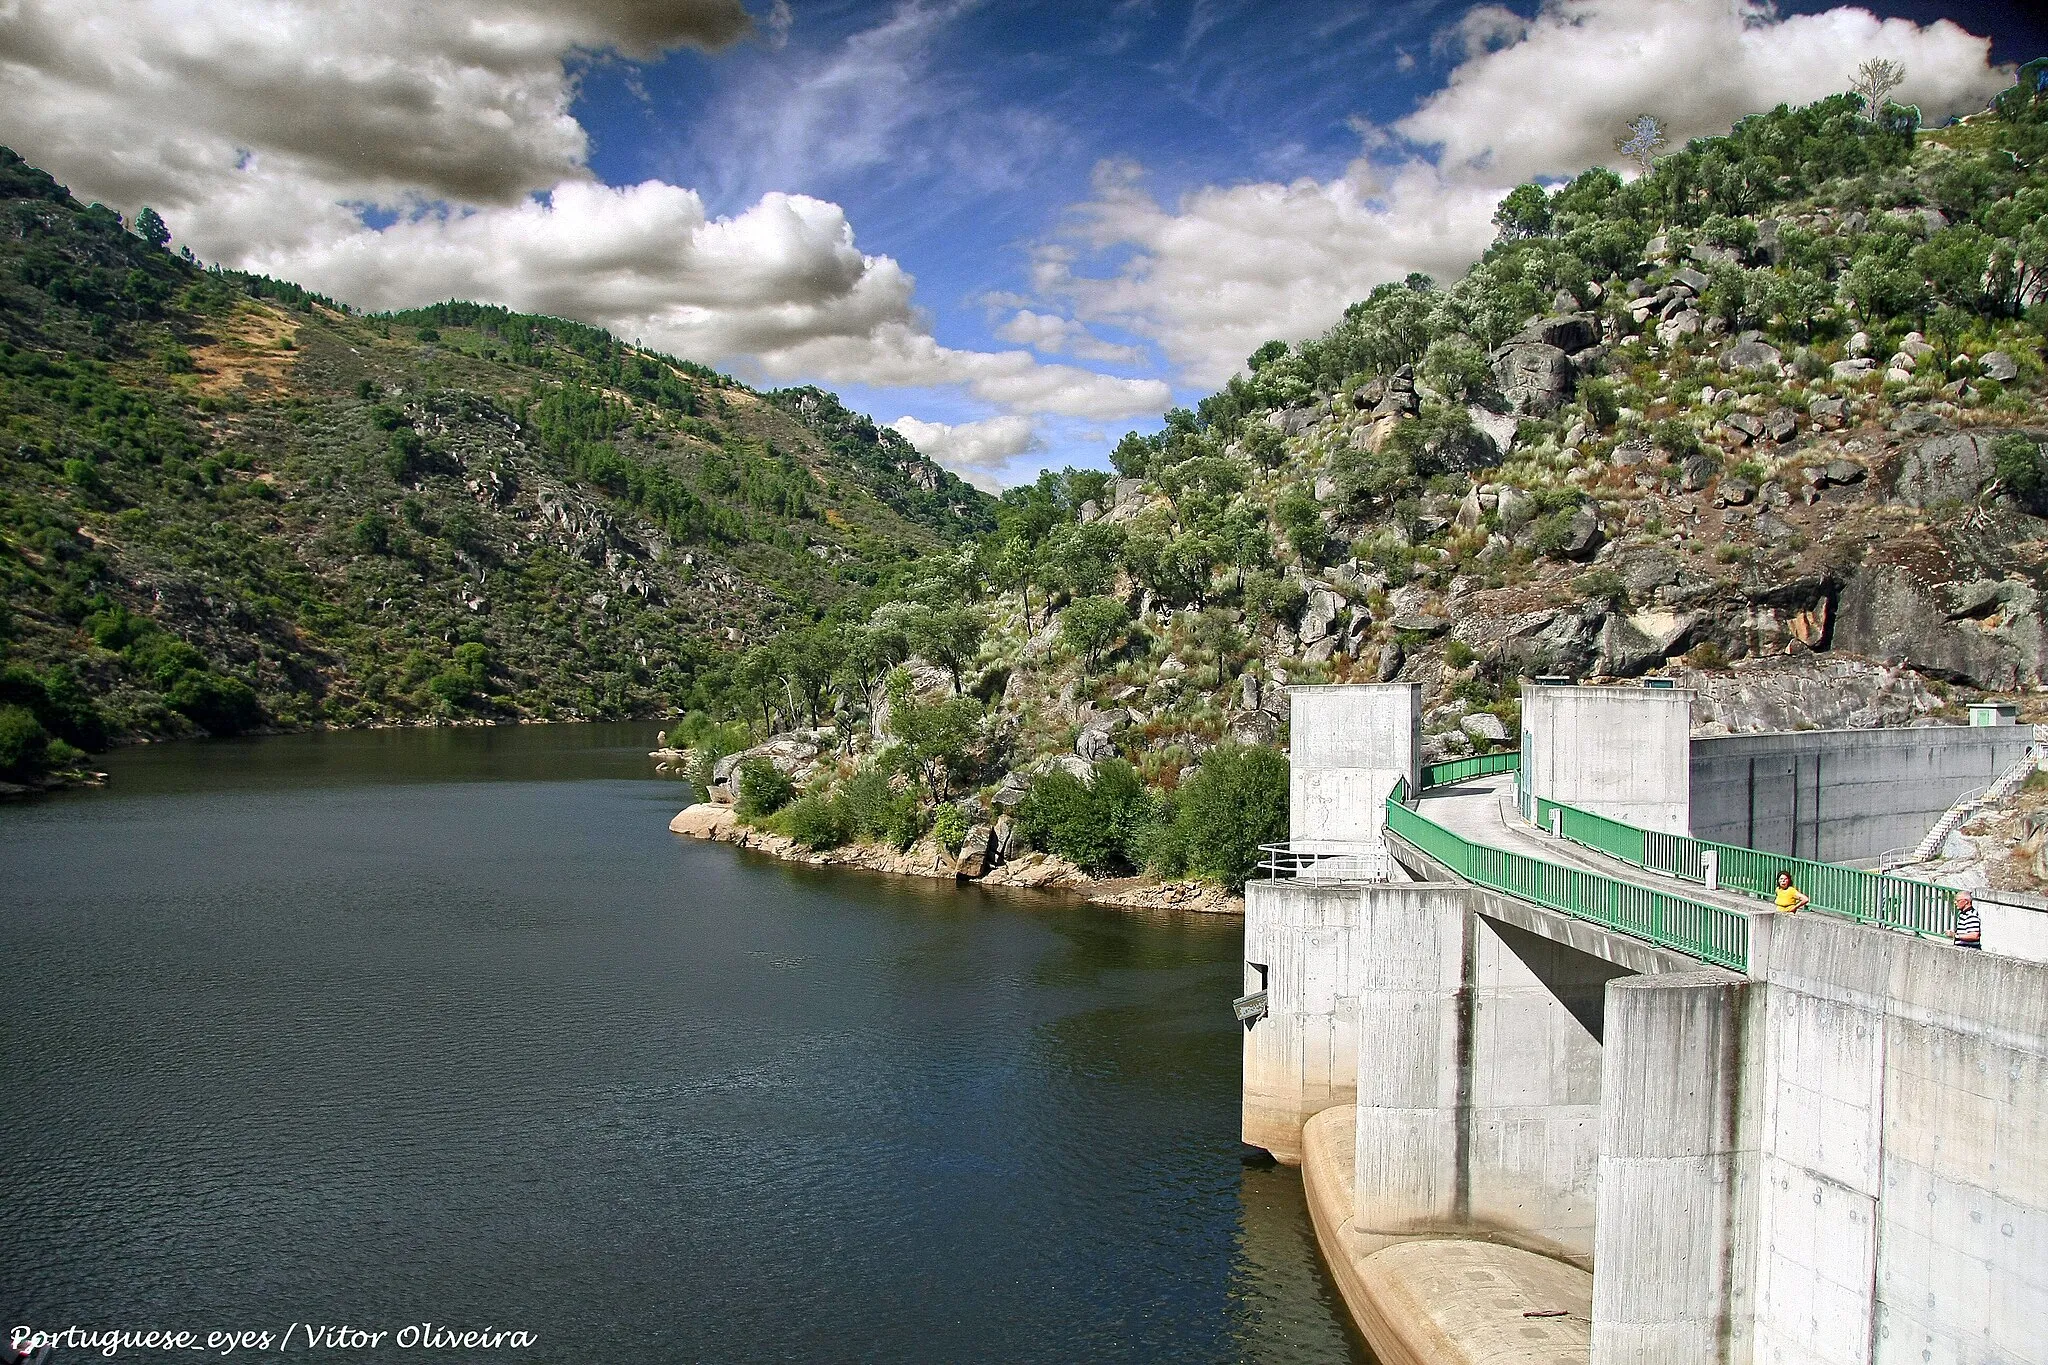 Photo showing: A barragem de Rebordelo localiza-se no concelho de Vinhais, distrito de Bragança, Portugal. Situa-se no rio Rabaçal. A barragem foi projectada em 1999 e entrou em funcionamento em 2004.
Barragem
É uma barragem de arco e gravidade em betão. Possui uma altura de 35,5 m acima da fundação e um comprimento de coroamento de 127 m. O volume de betão é de 19.000 m³. Possui uma capacidade de descarga máxima de 1.480 m³/s.
Albufeira
A albufeira da barragem apresenta uma superfície inundável ao NPA (Nível Pleno de Armazenamento) de 46 hectares e tem uma capacidade total de 3,13 hm³. As cotas de água na albufeira são: NPA de 380 metros, NMC (Nível Máximo de Cheia) de 386 metros e NME (Nível Mínimo de Exploração) de 378,5 metros.
Central hidroeléctrica

A central hidroeléctrica é constituída por um grupo Kaplan com uma potência instalada de 8,75 MW. A energia produzida em média por ano é de 24 GWh. pt.wikipedia.org/wiki/Barragem_de_Rebordelo